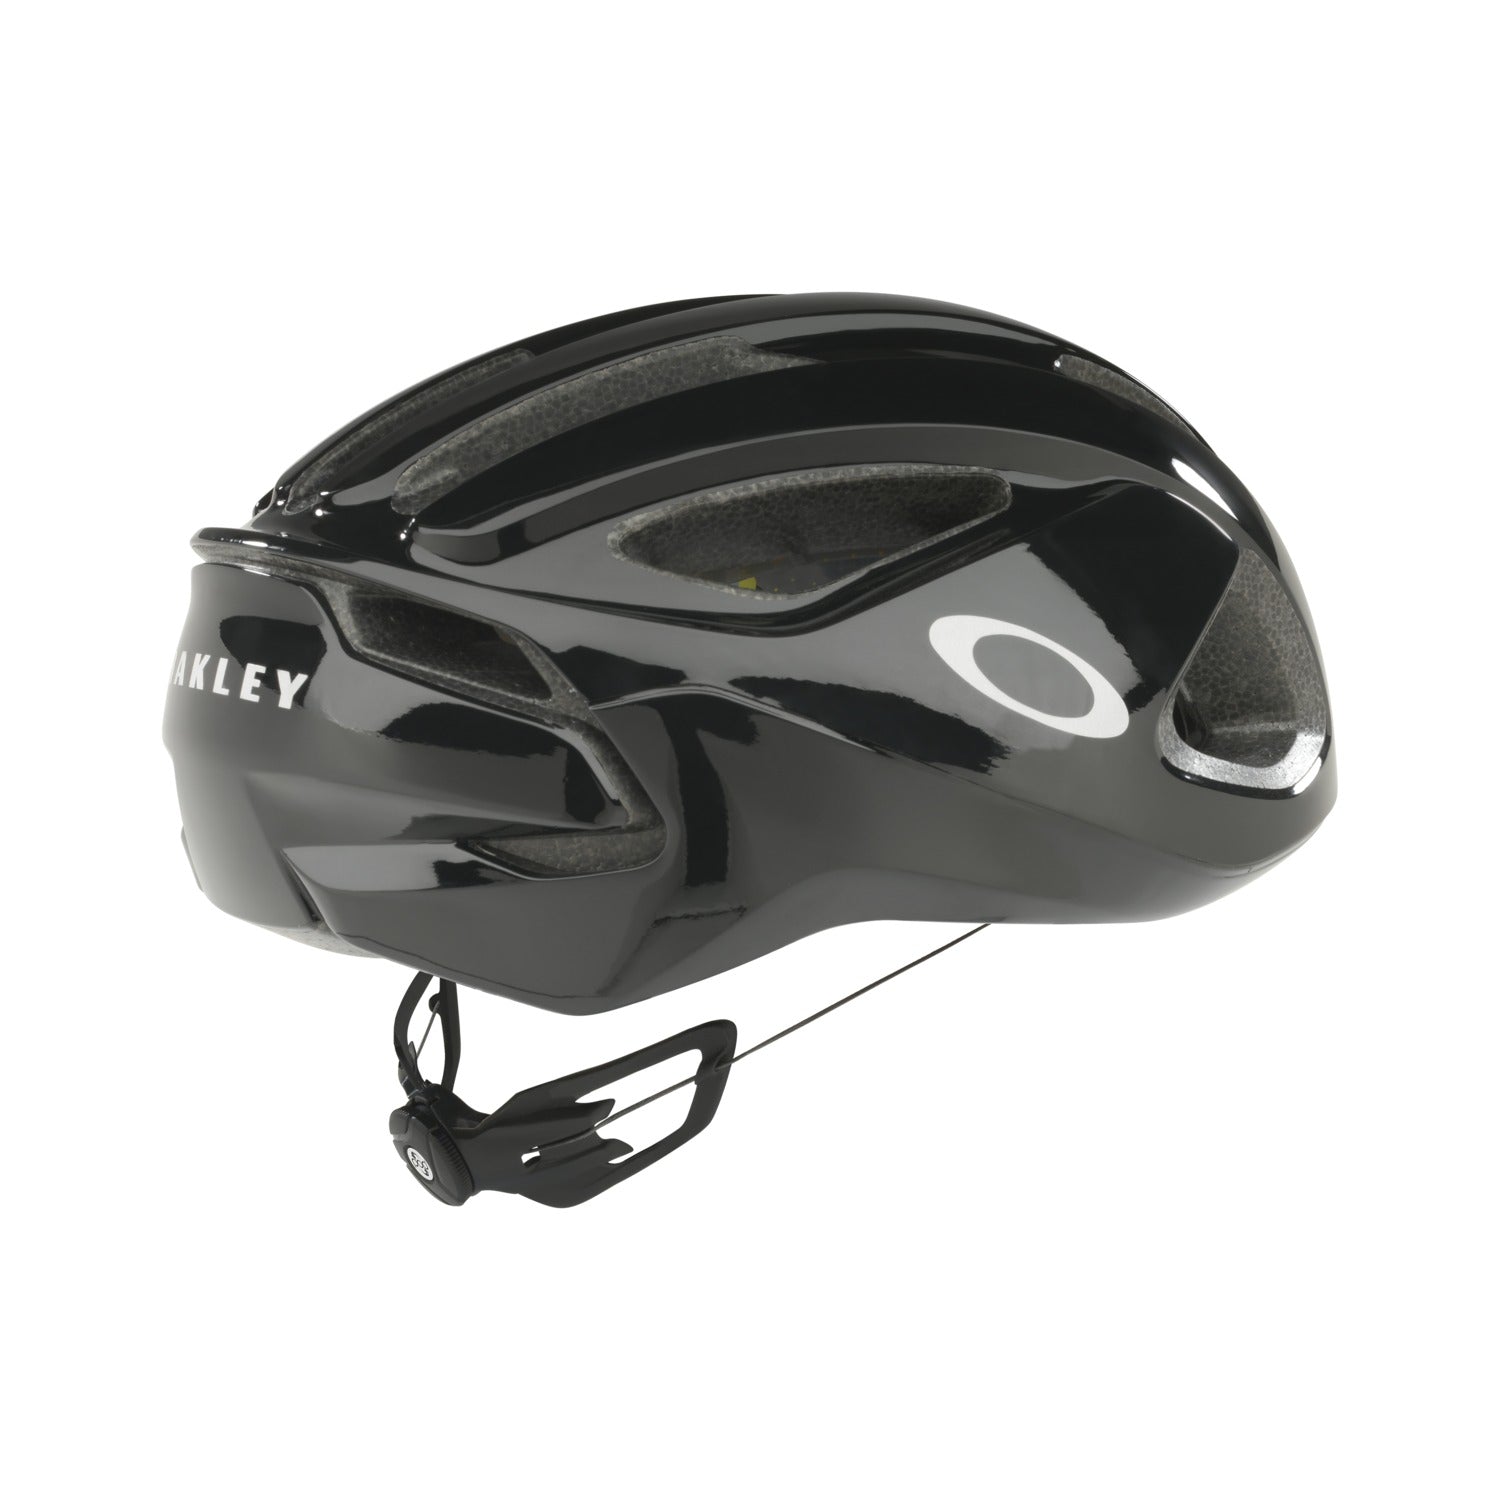 Oakley ARO3 Cycling Bike Helmet